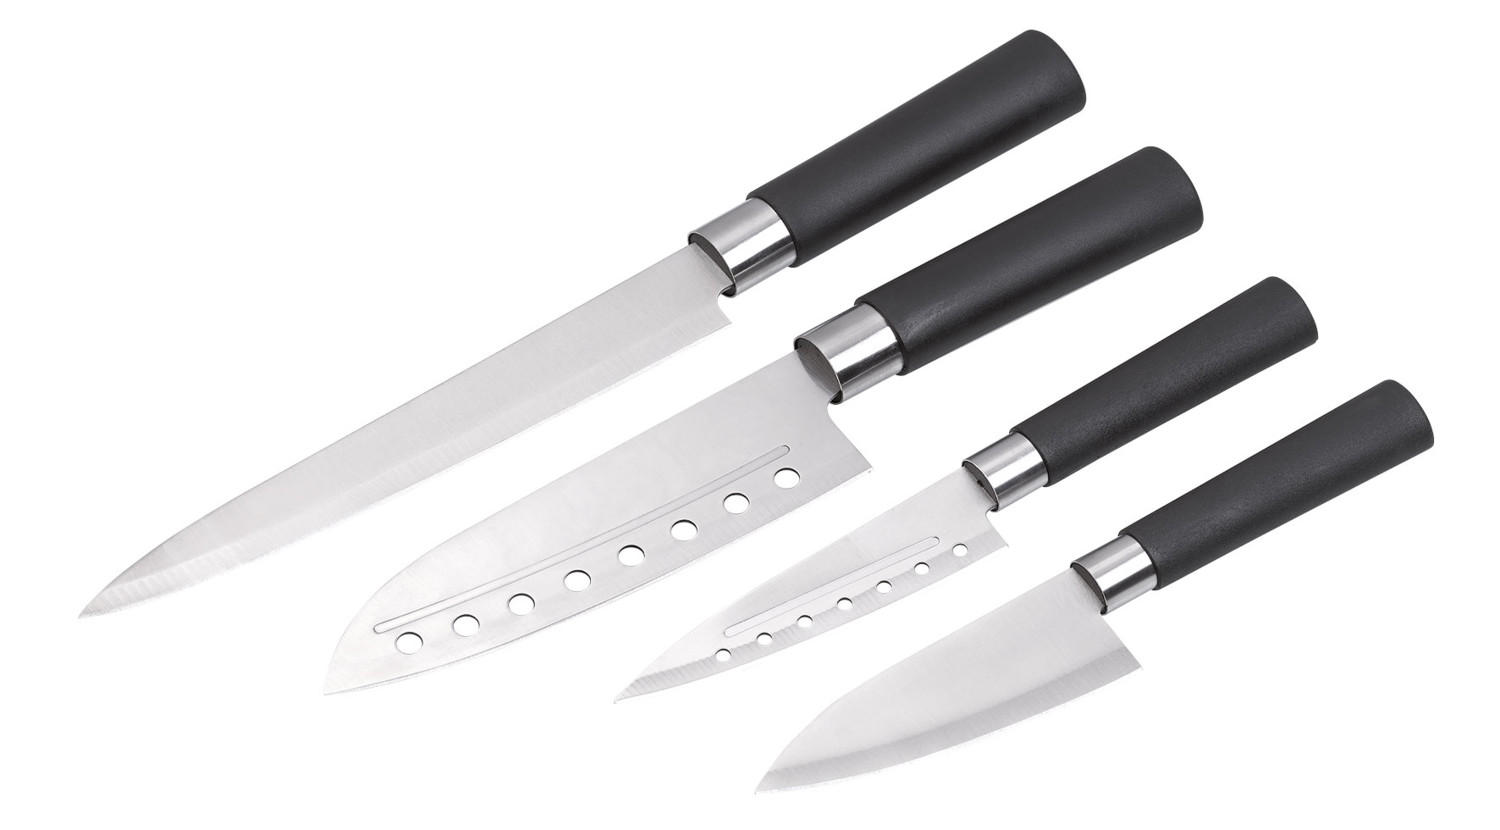 Ensemble bloc et couteaux 14 pièces en acier inoxydable de Cuisinar